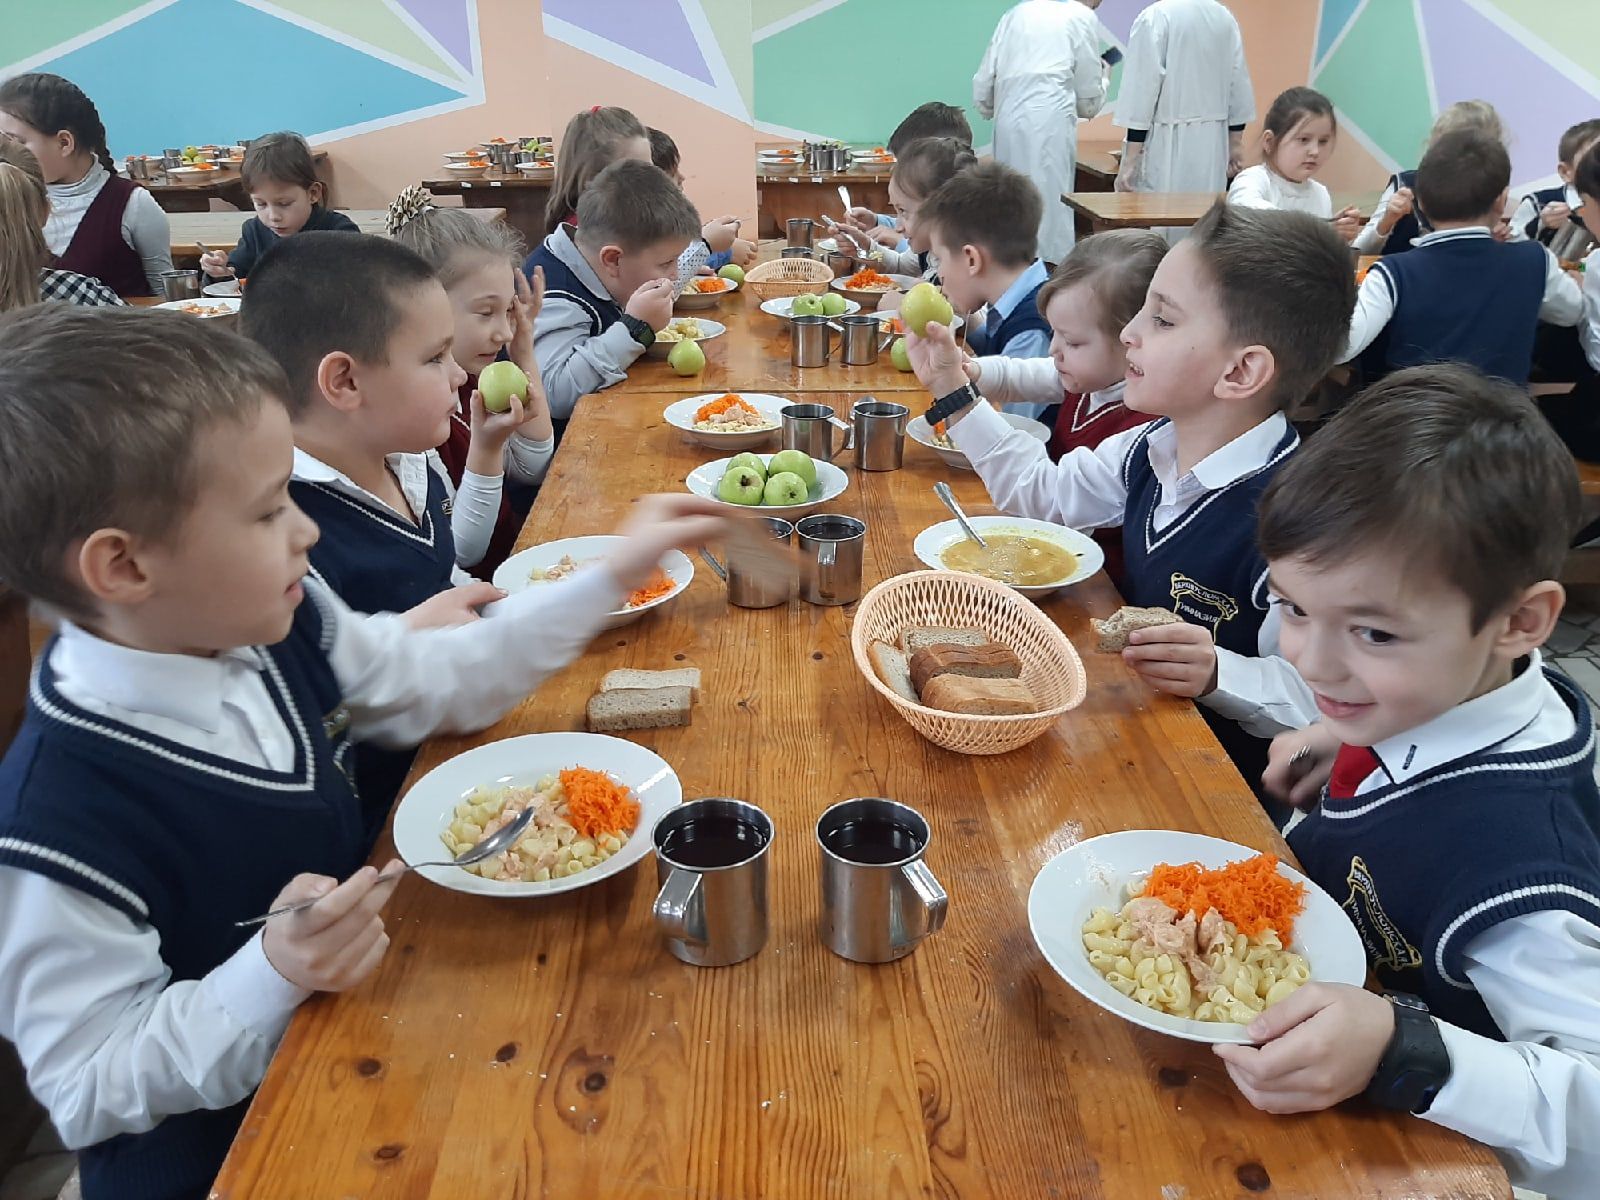 Вилен Касимов: "Правильное питание - залог здоровья наших детей"